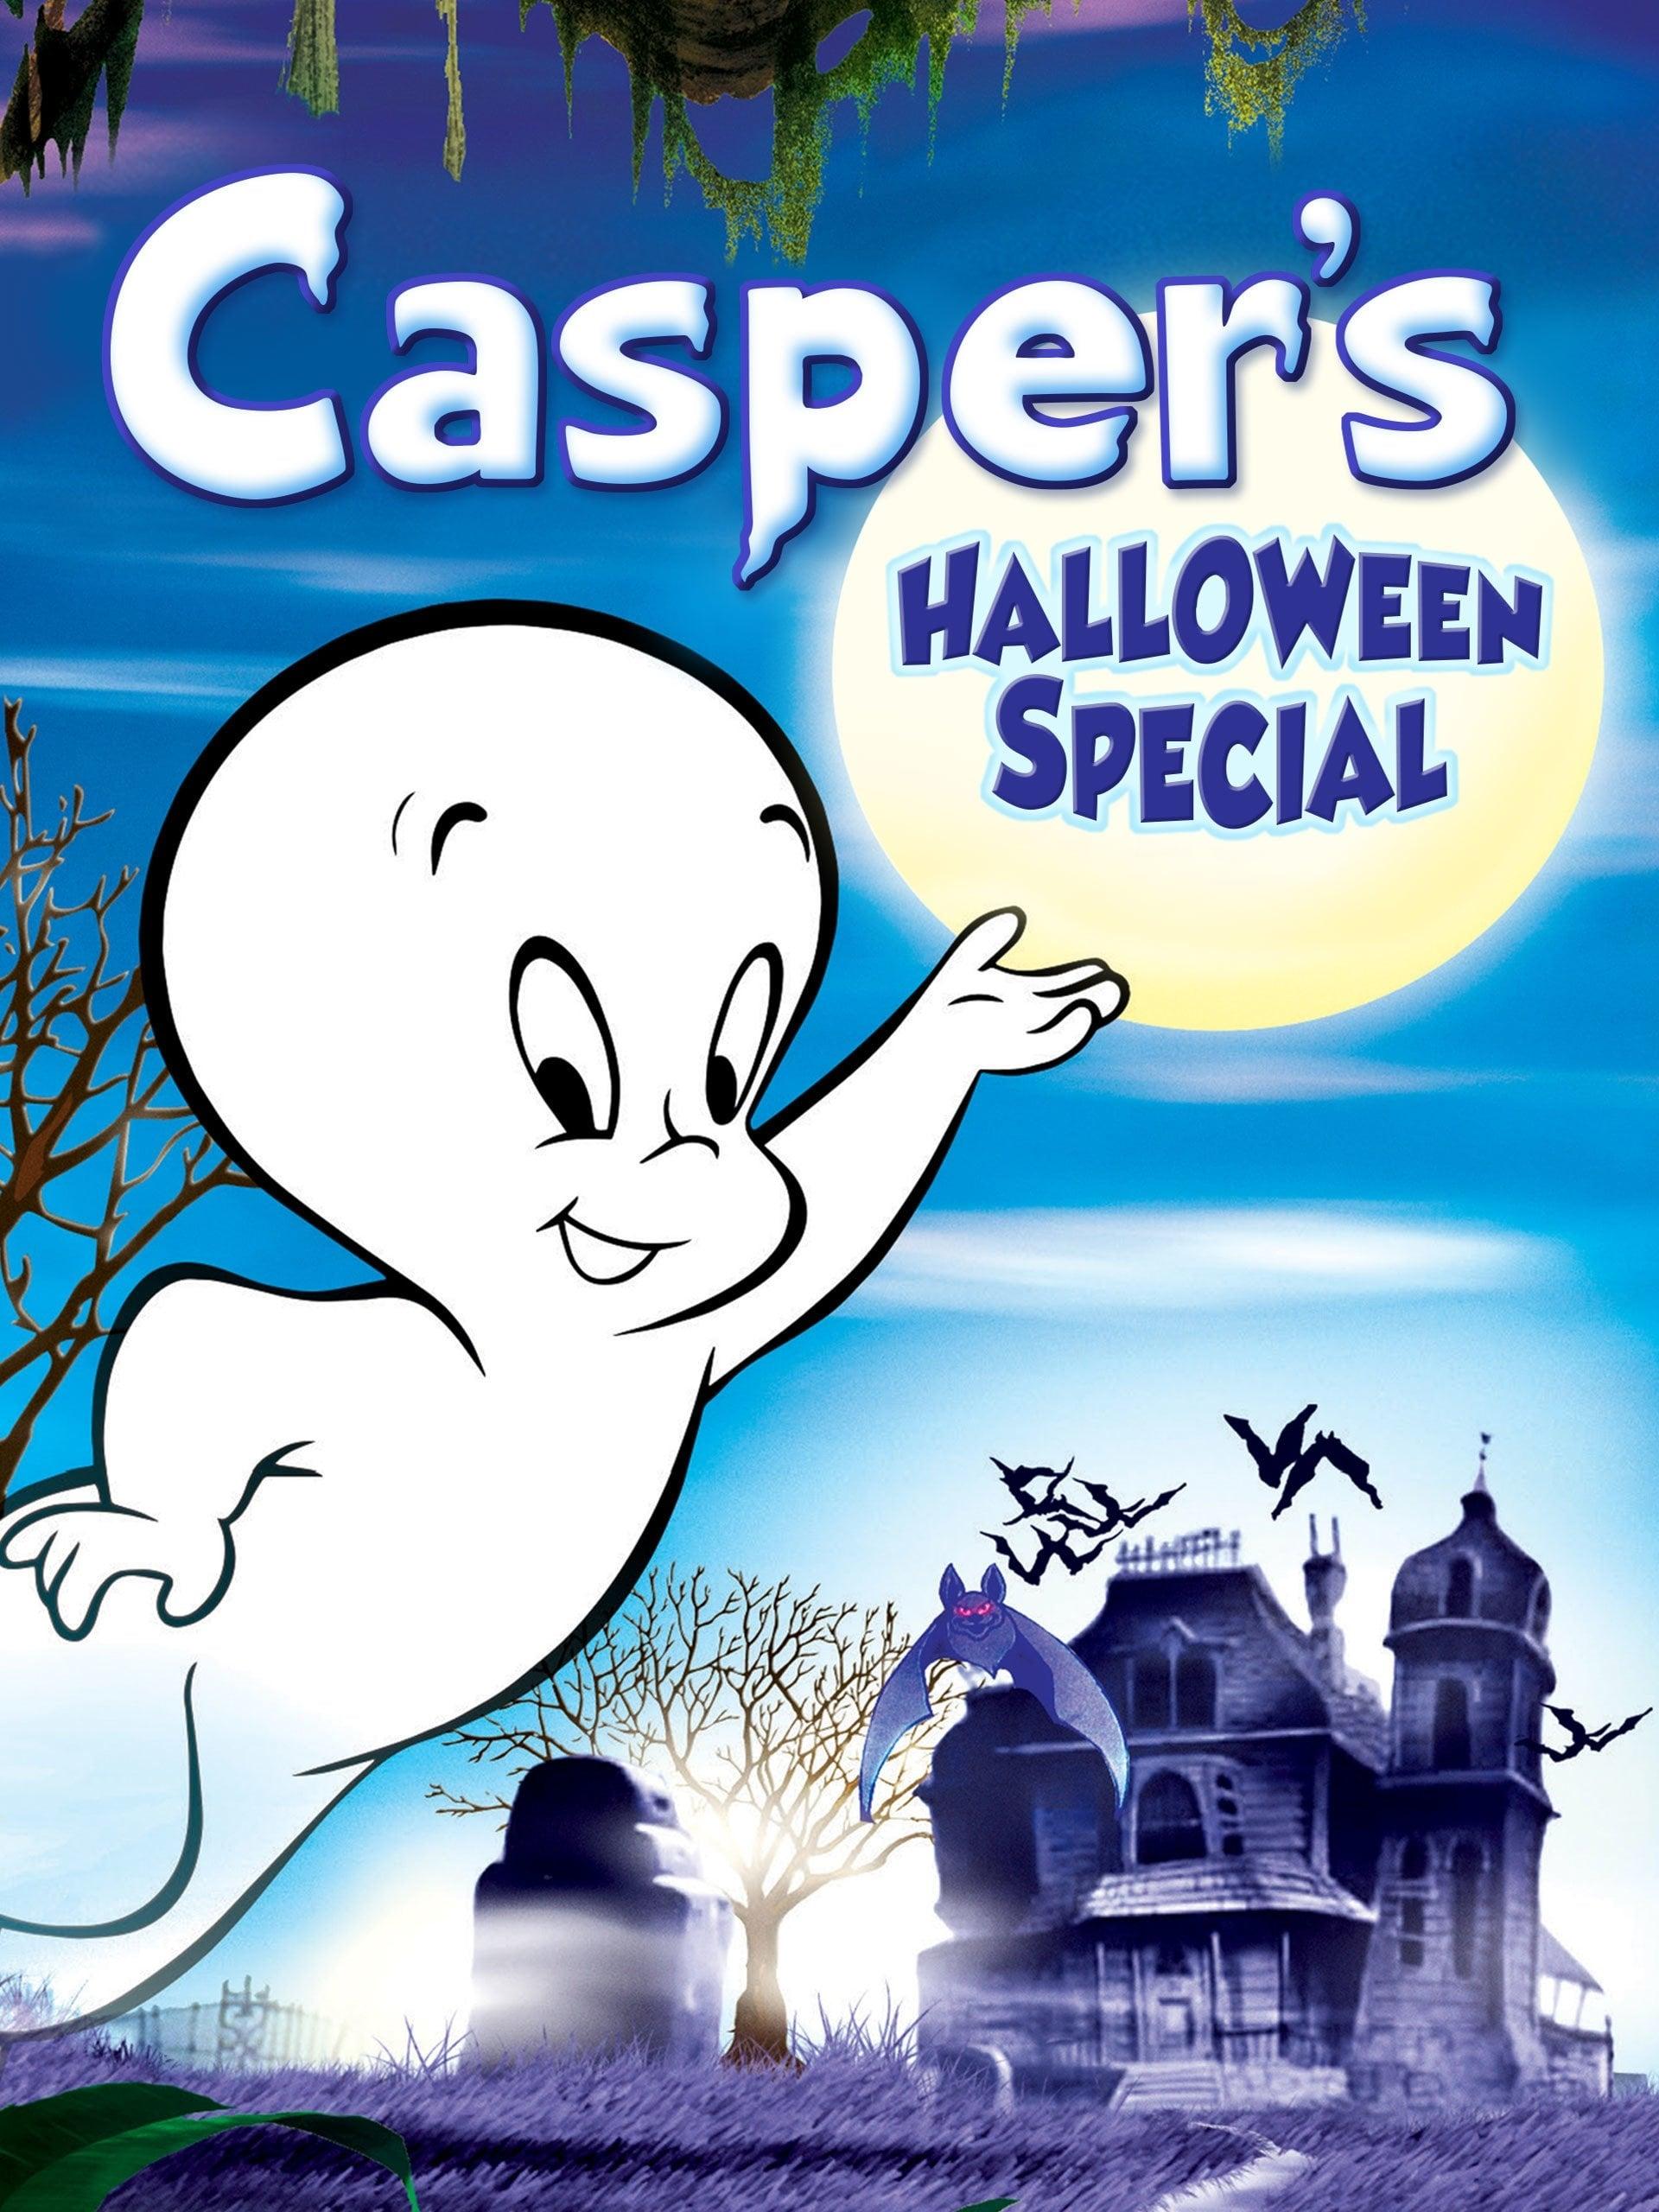 Casper's Halloween Special poster